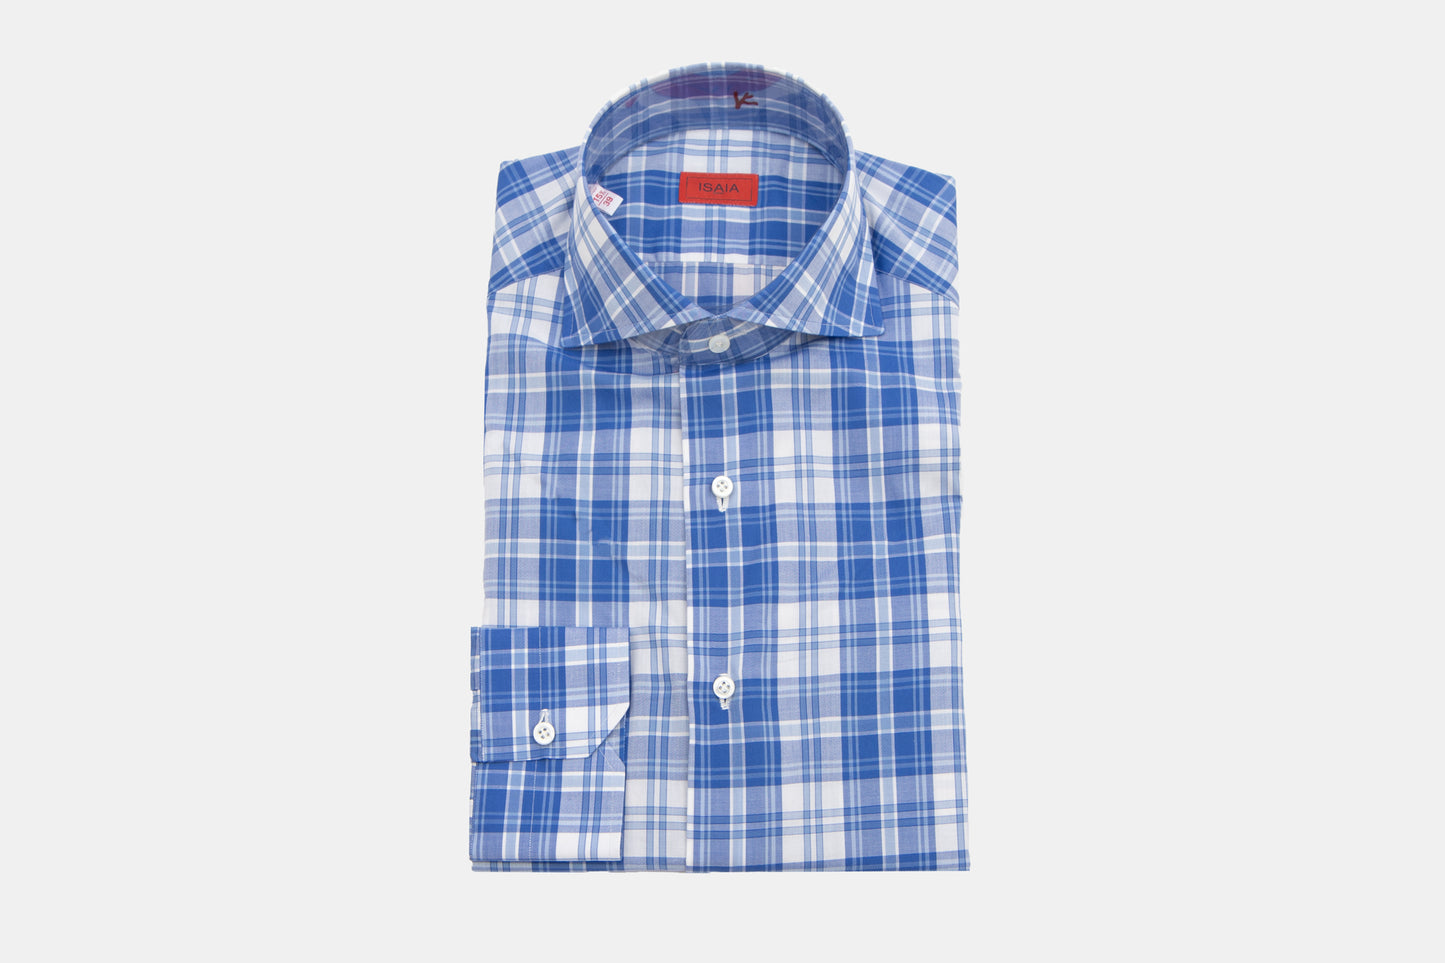 Khakis of Carmel - modern fit blue plaid shirt